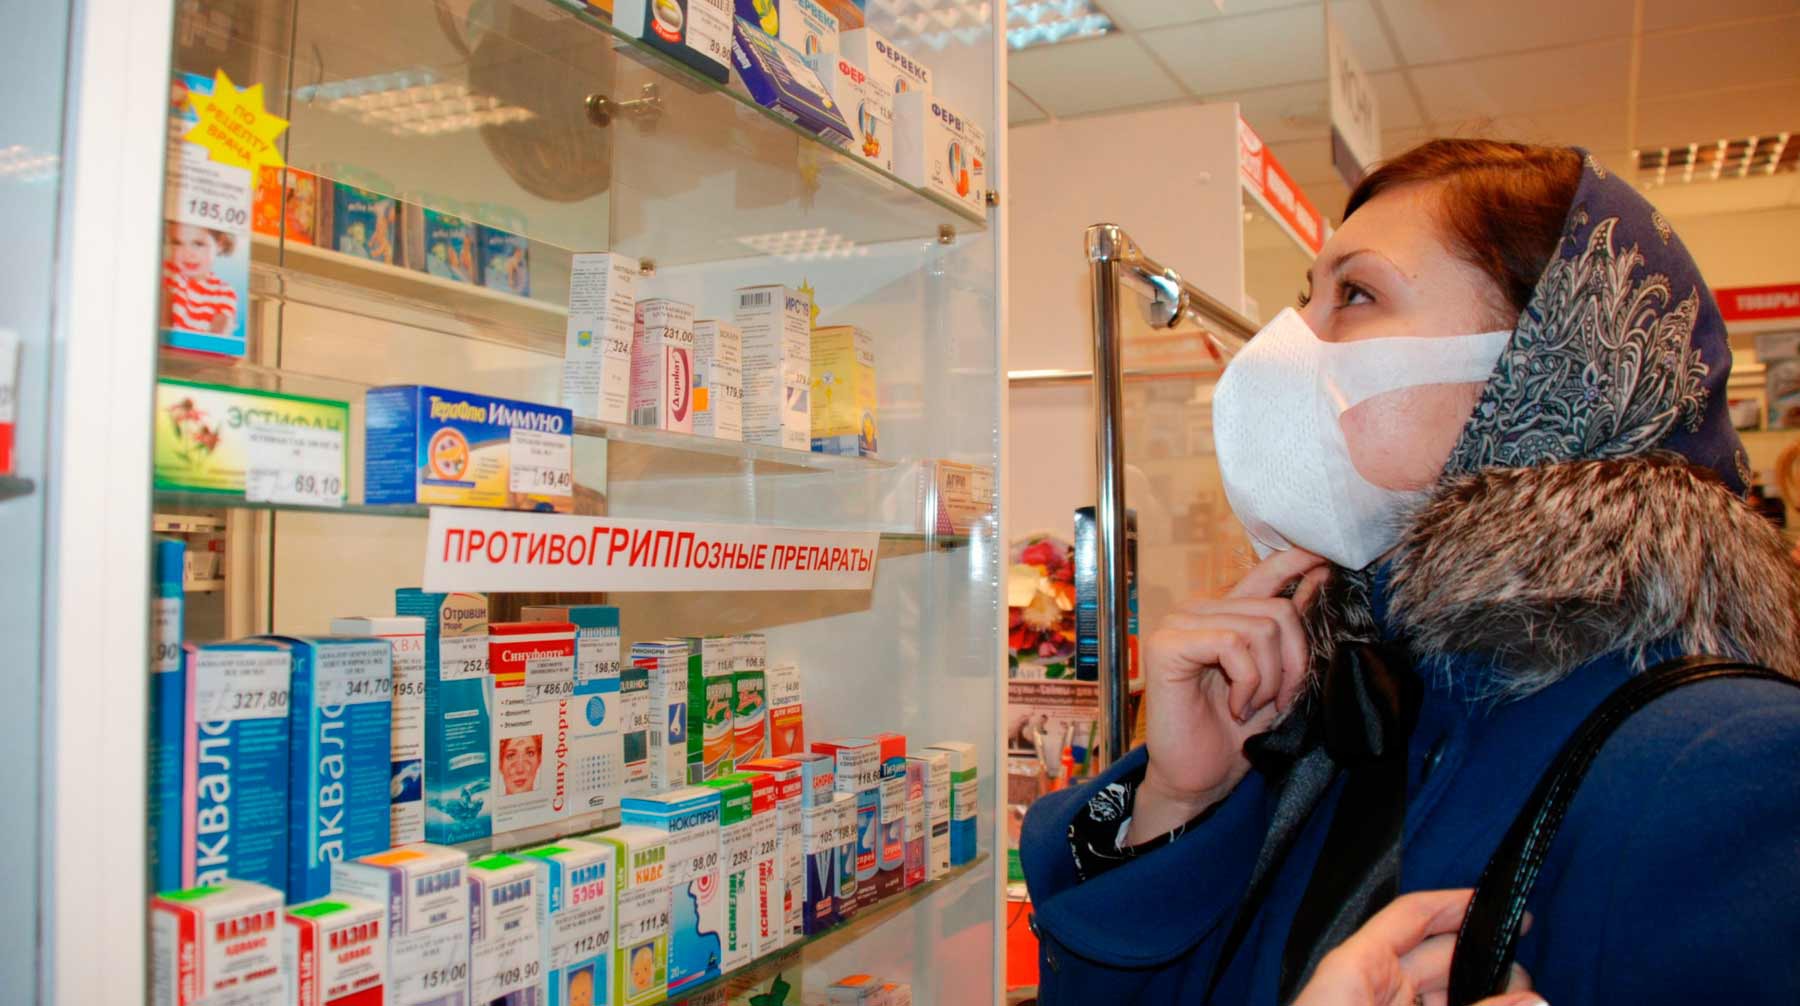 Dailystorm - «Ведомости»: В России возникли сложности с ввозом лекарств и детского питания